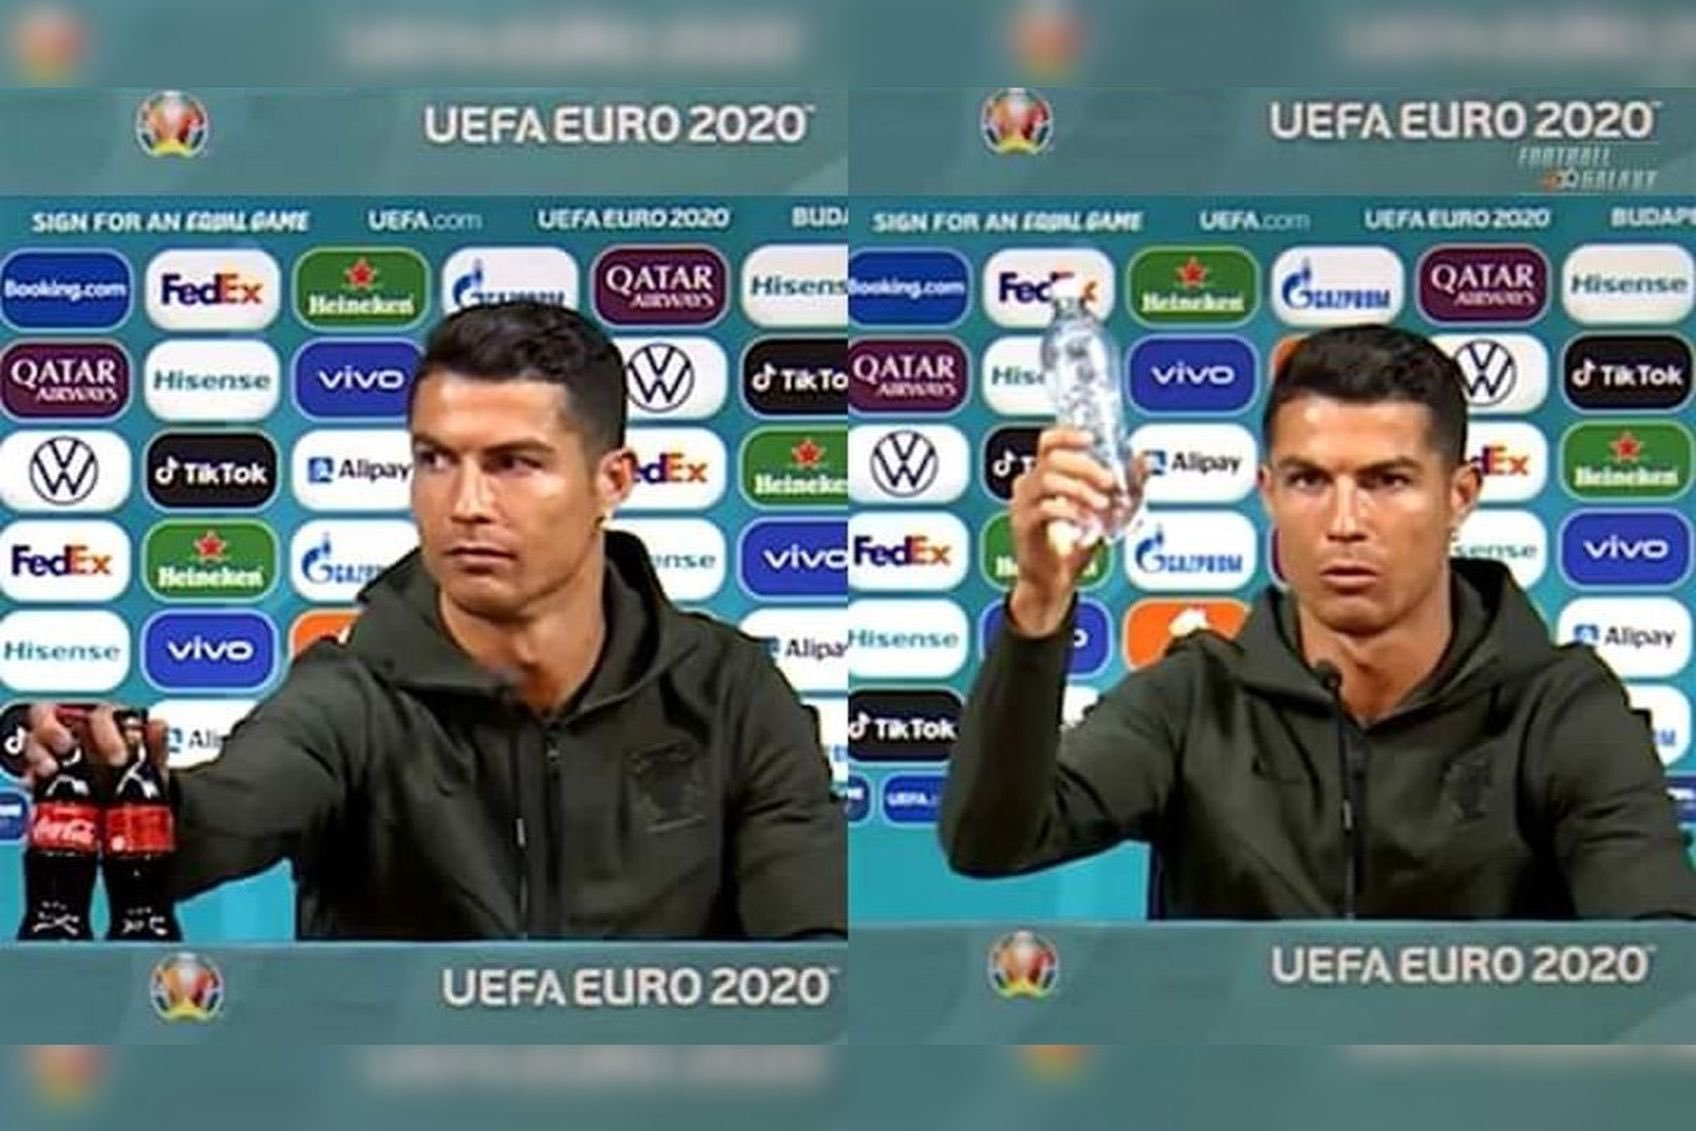 Ronaldo khiến dư luận xôn xao vì hành động 'hắt hủi' sản phẩm của nhà tài trợ